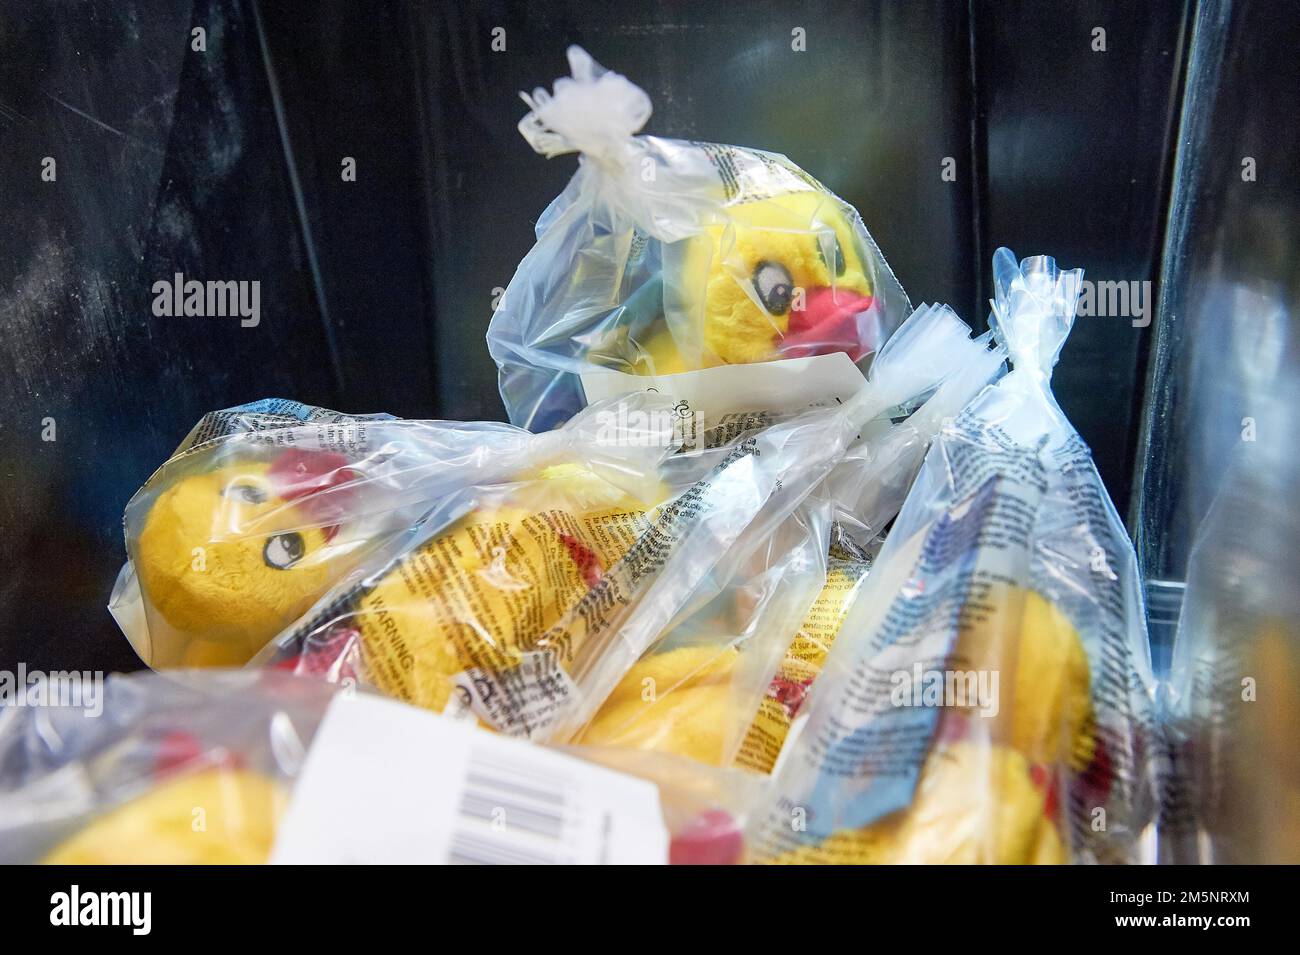 Anatre giocattolo imballate in sacchetti di plastica in un contenitore di trasporto, Amazon Logistik Winsen GmbH, 21423 Winsen, Luhe, bassa Sassonia, Germania Foto Stock